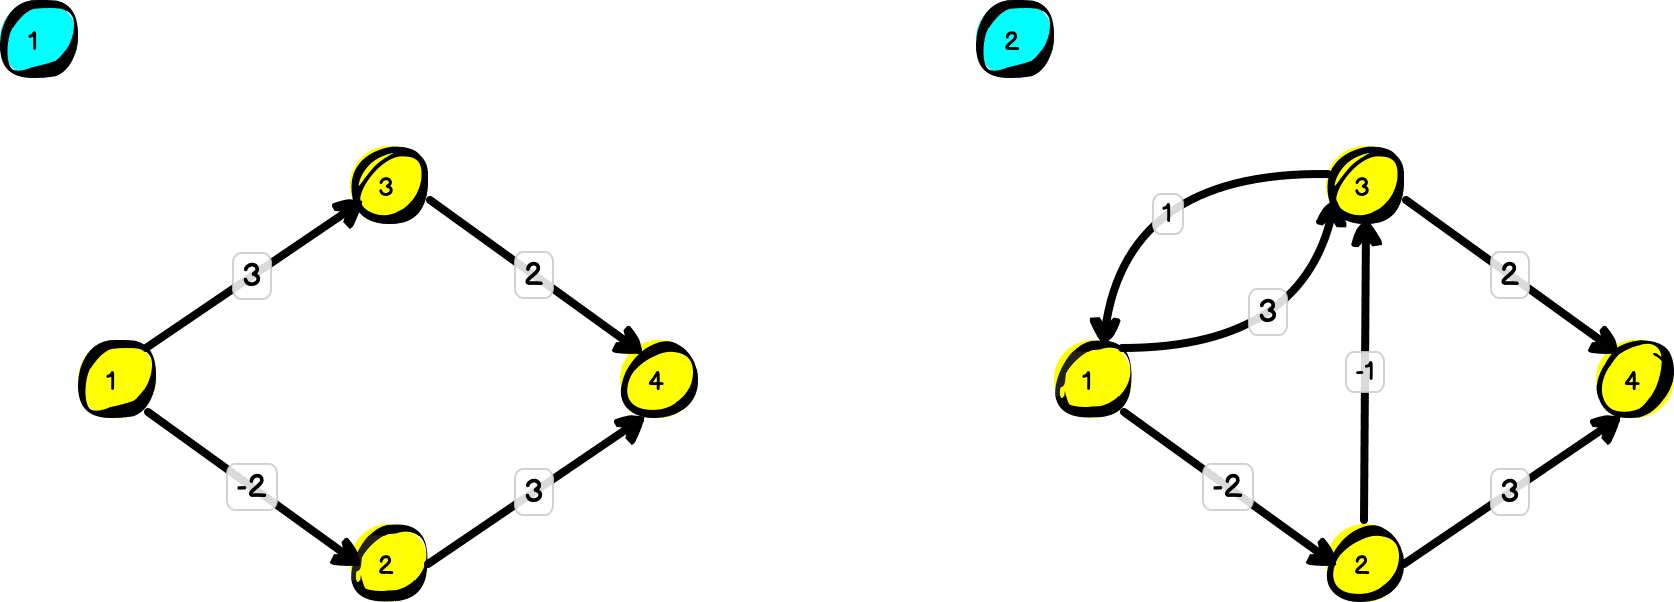 Dwa grafy. Pierwszy jest acykliczny i zawiera jedną ścieżkę z wagą ujemną. Drugi zawiera dwie ścieżki z ujemnymi wagami oraz cykl.